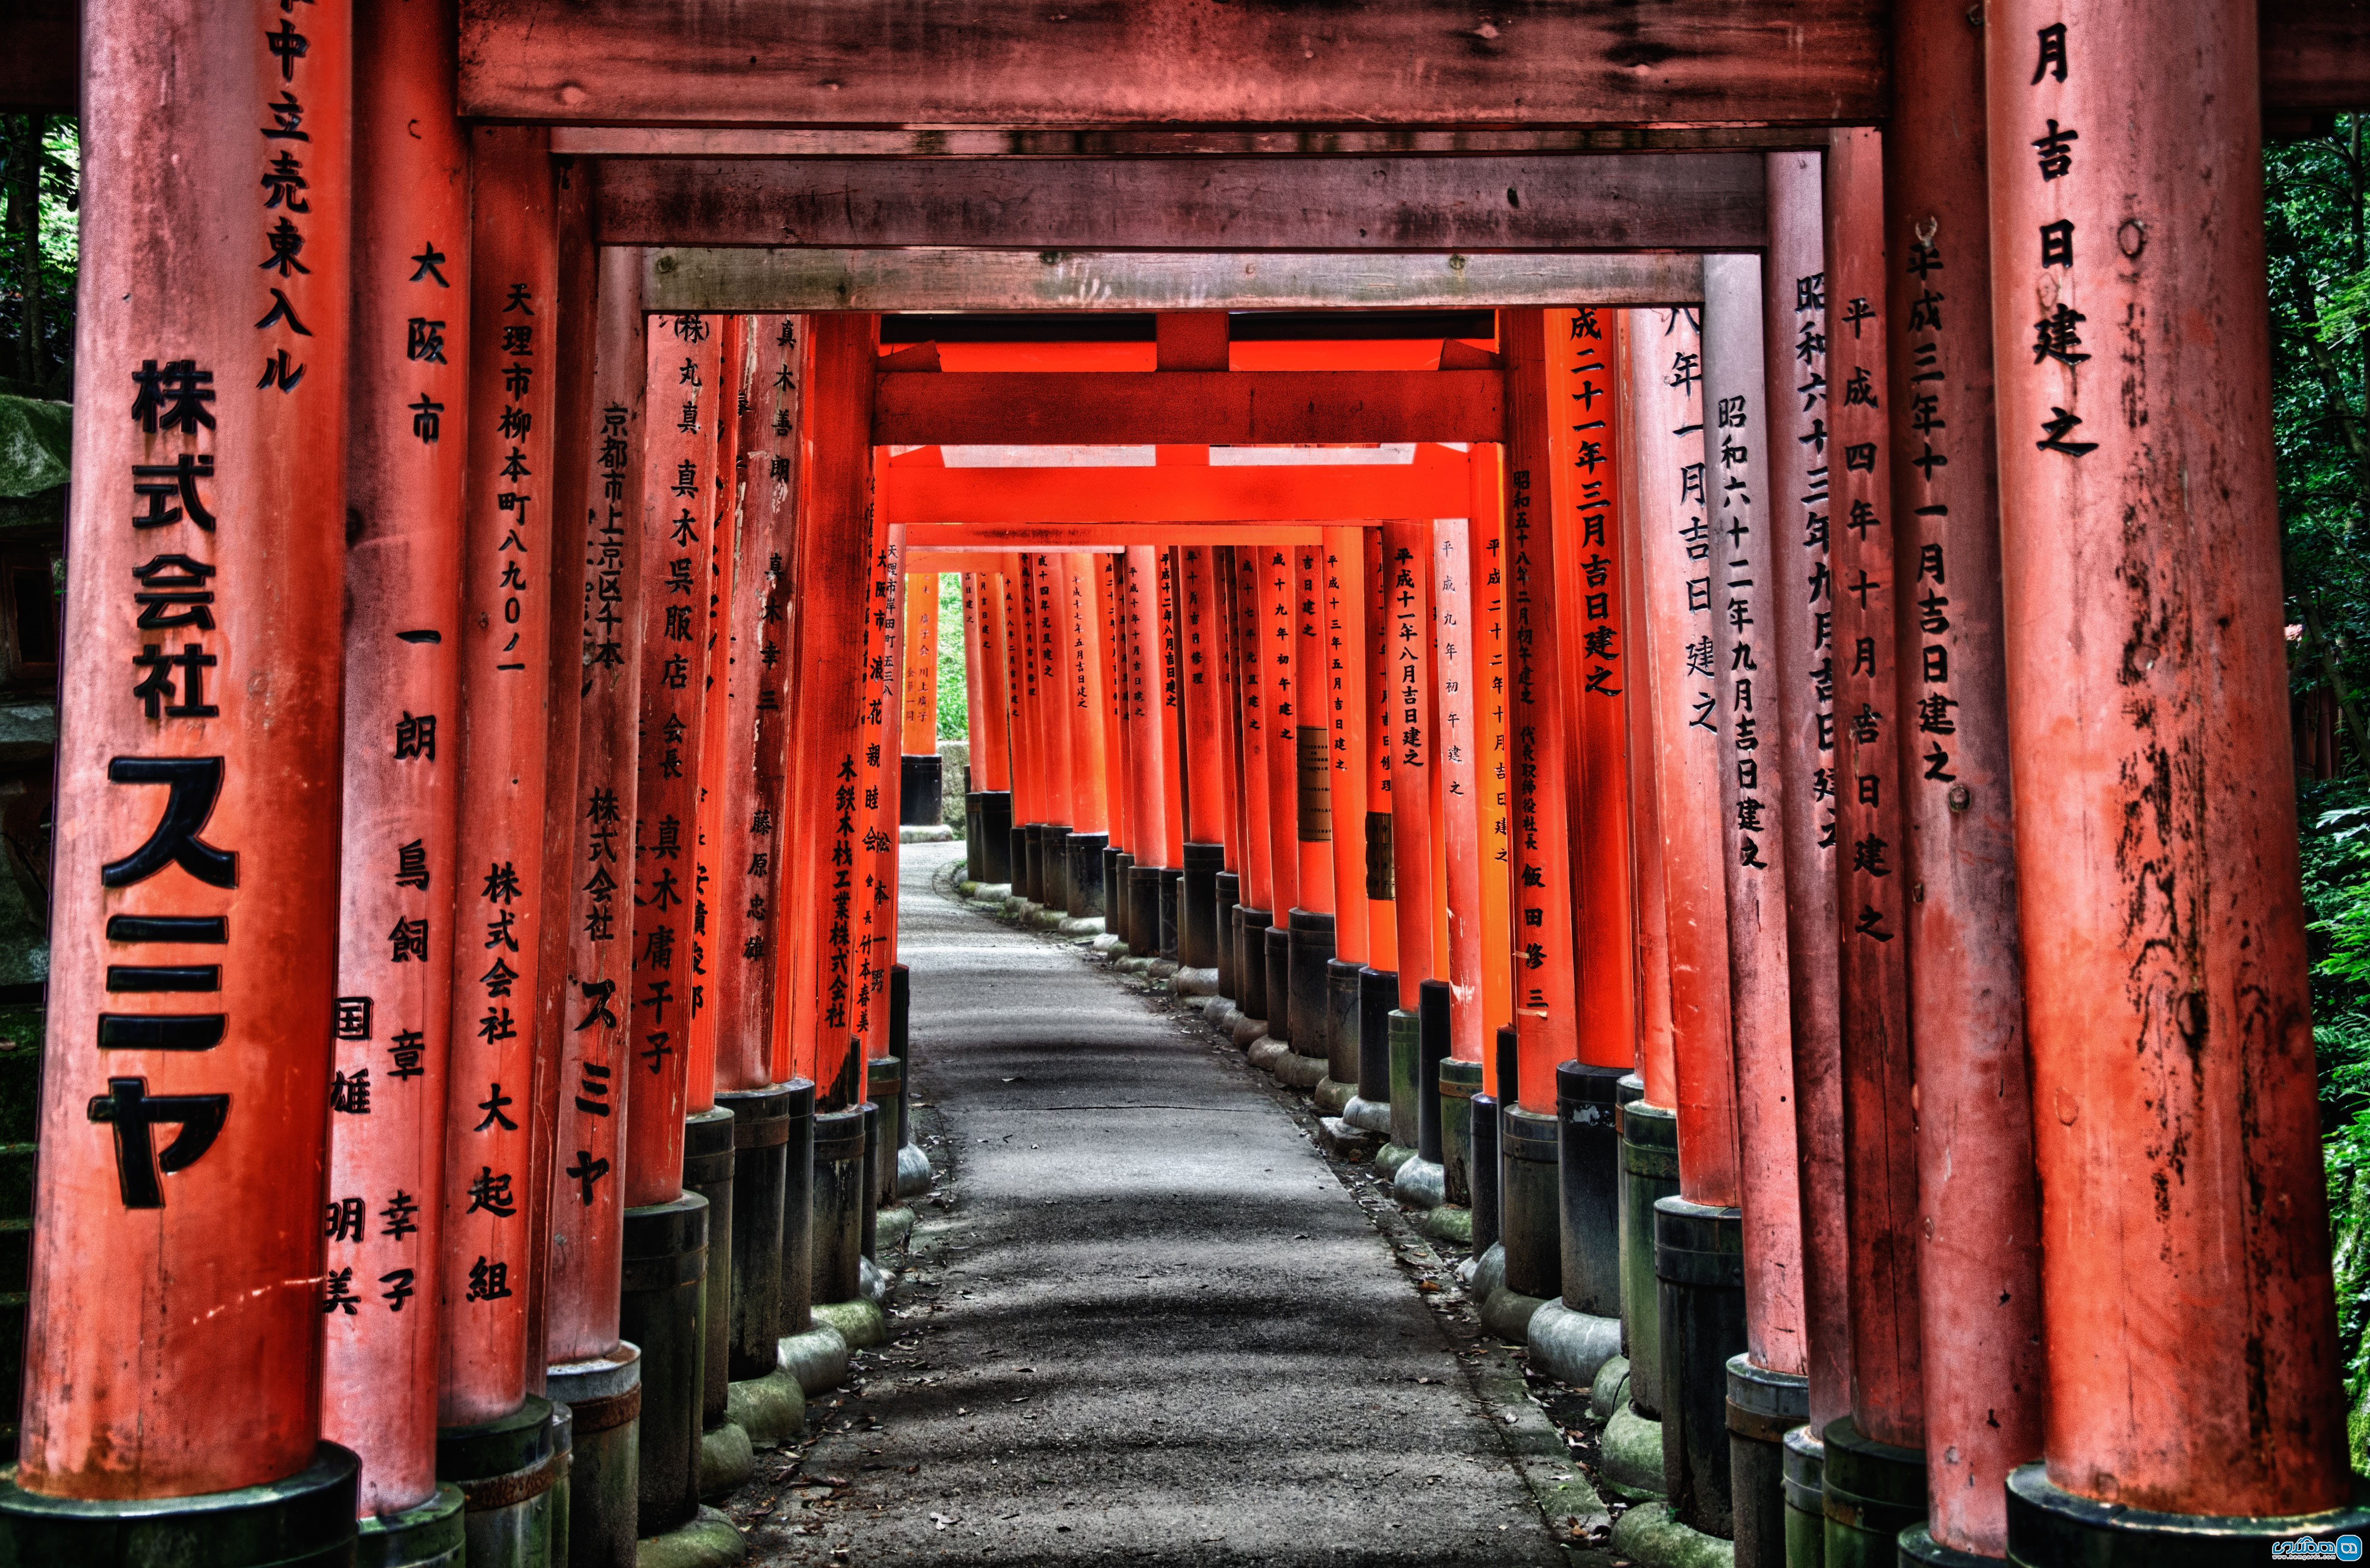 سفر با کوله پشتی به کیوتو Kyoto